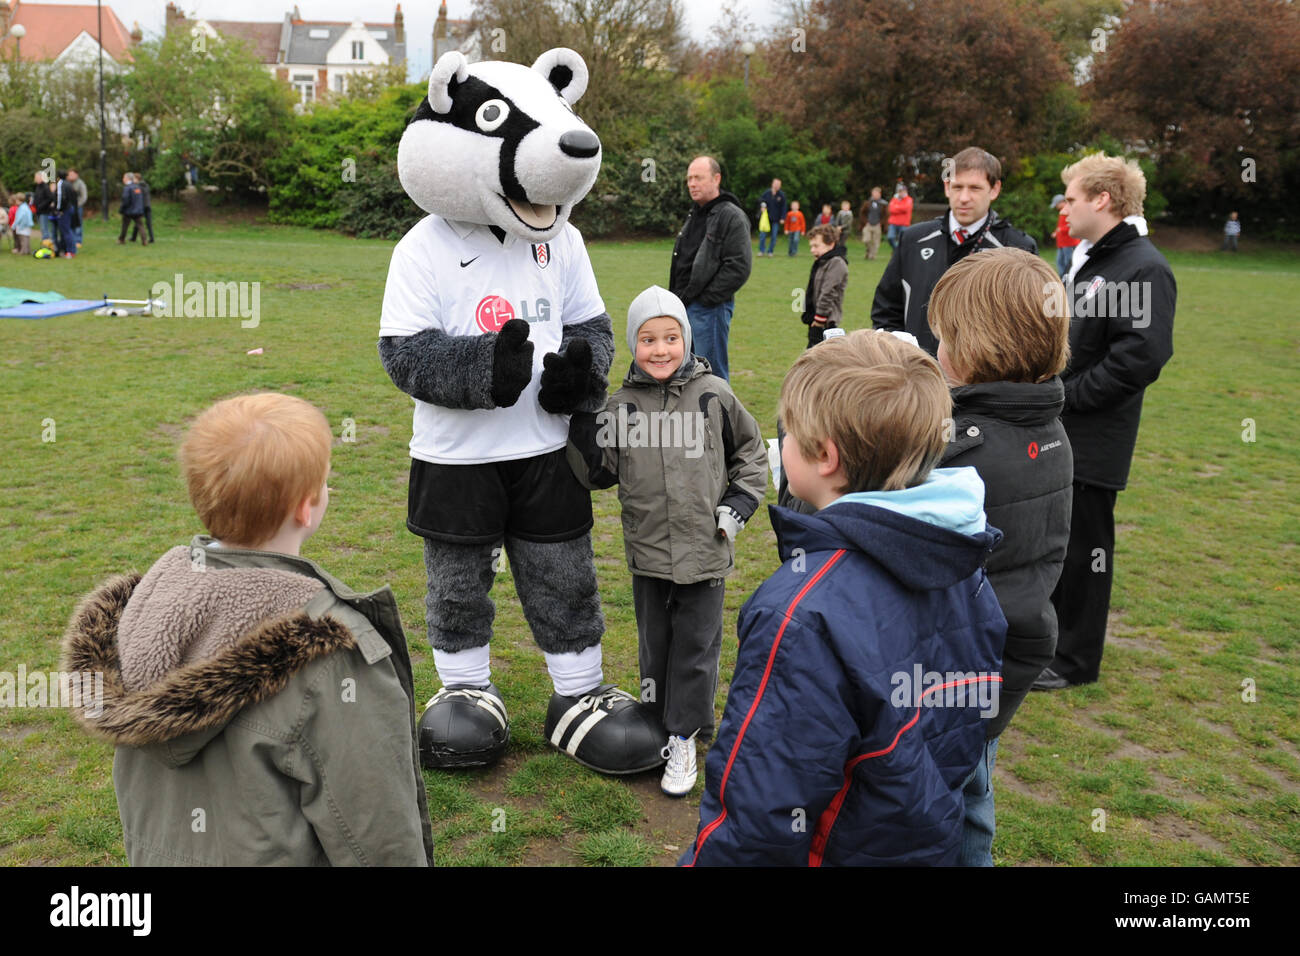 Calcio - Fulham Community Day - Bishops Park. Attività che si svolgono nella giornata della sensibilizzazione della comunità Foto Stock